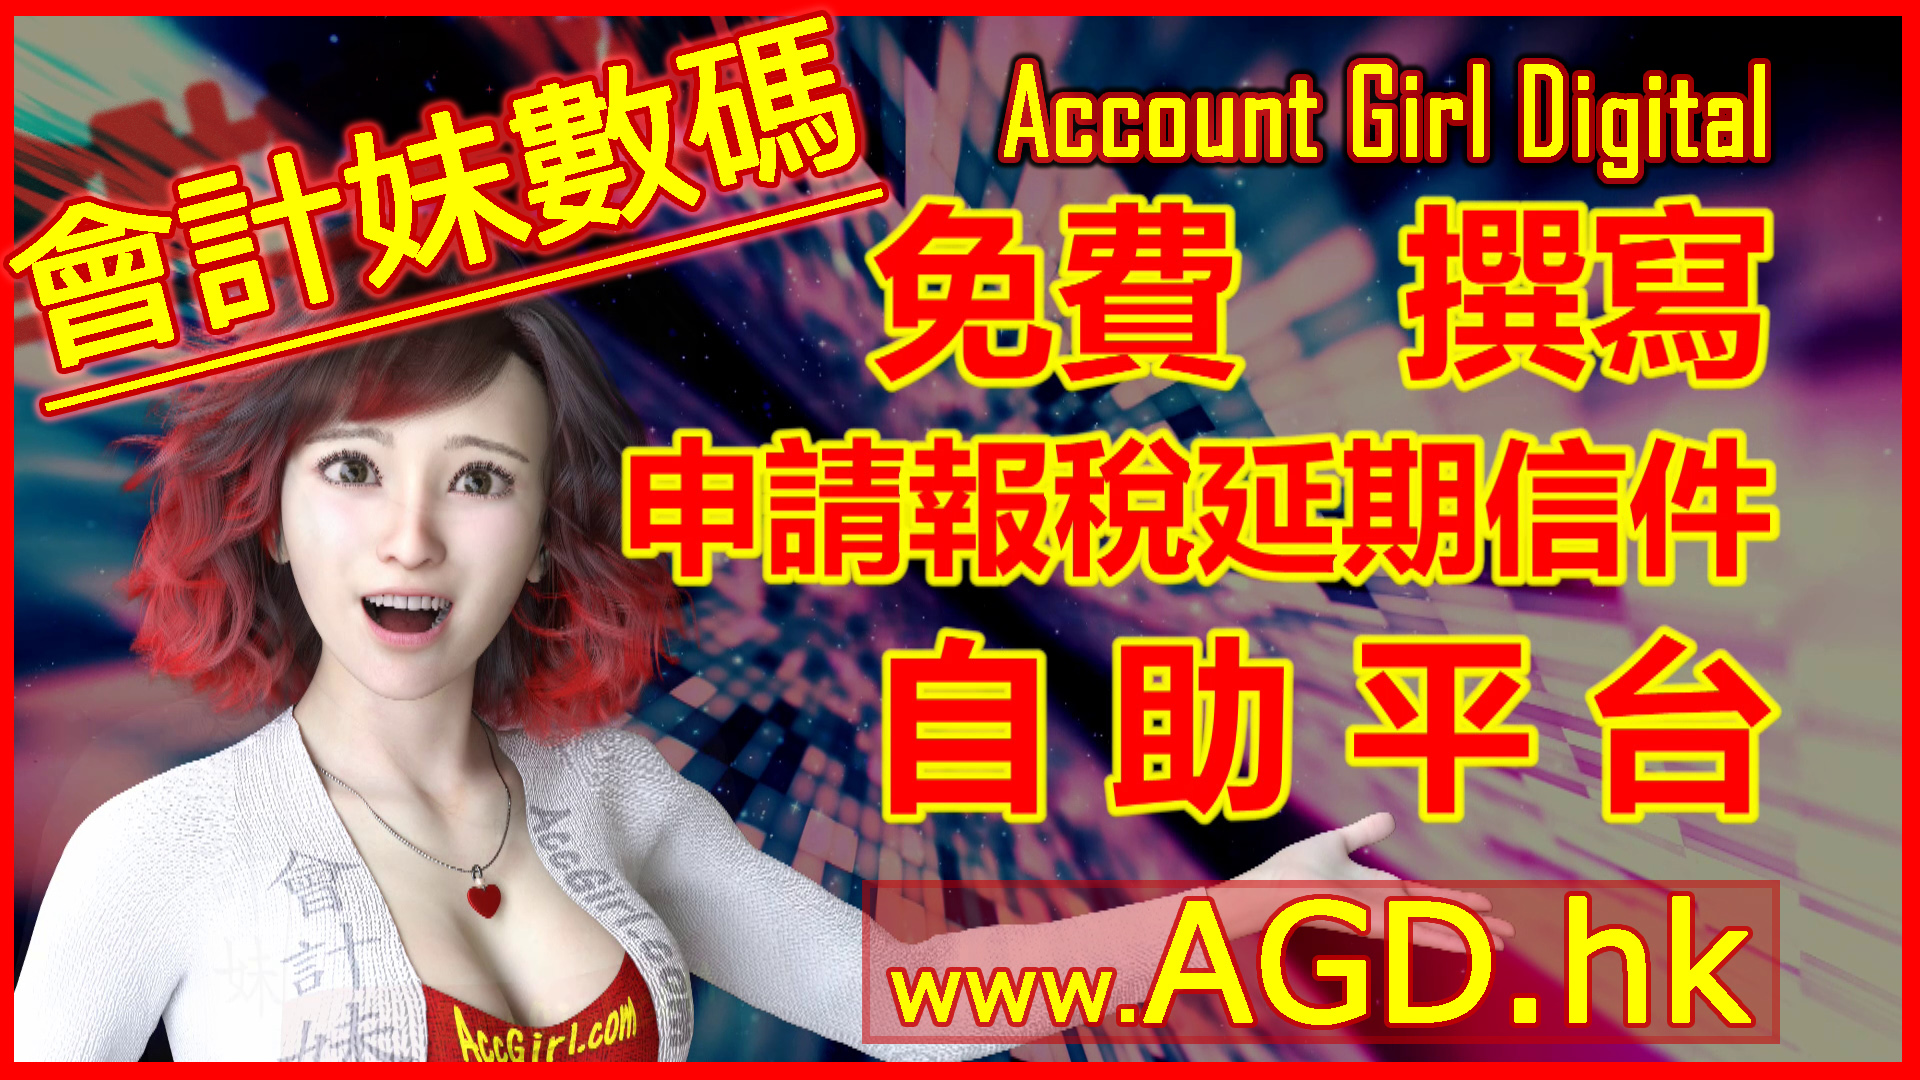 會計妹數碼 Account Girl Digital 申請報稅延期信件 免費自助平台